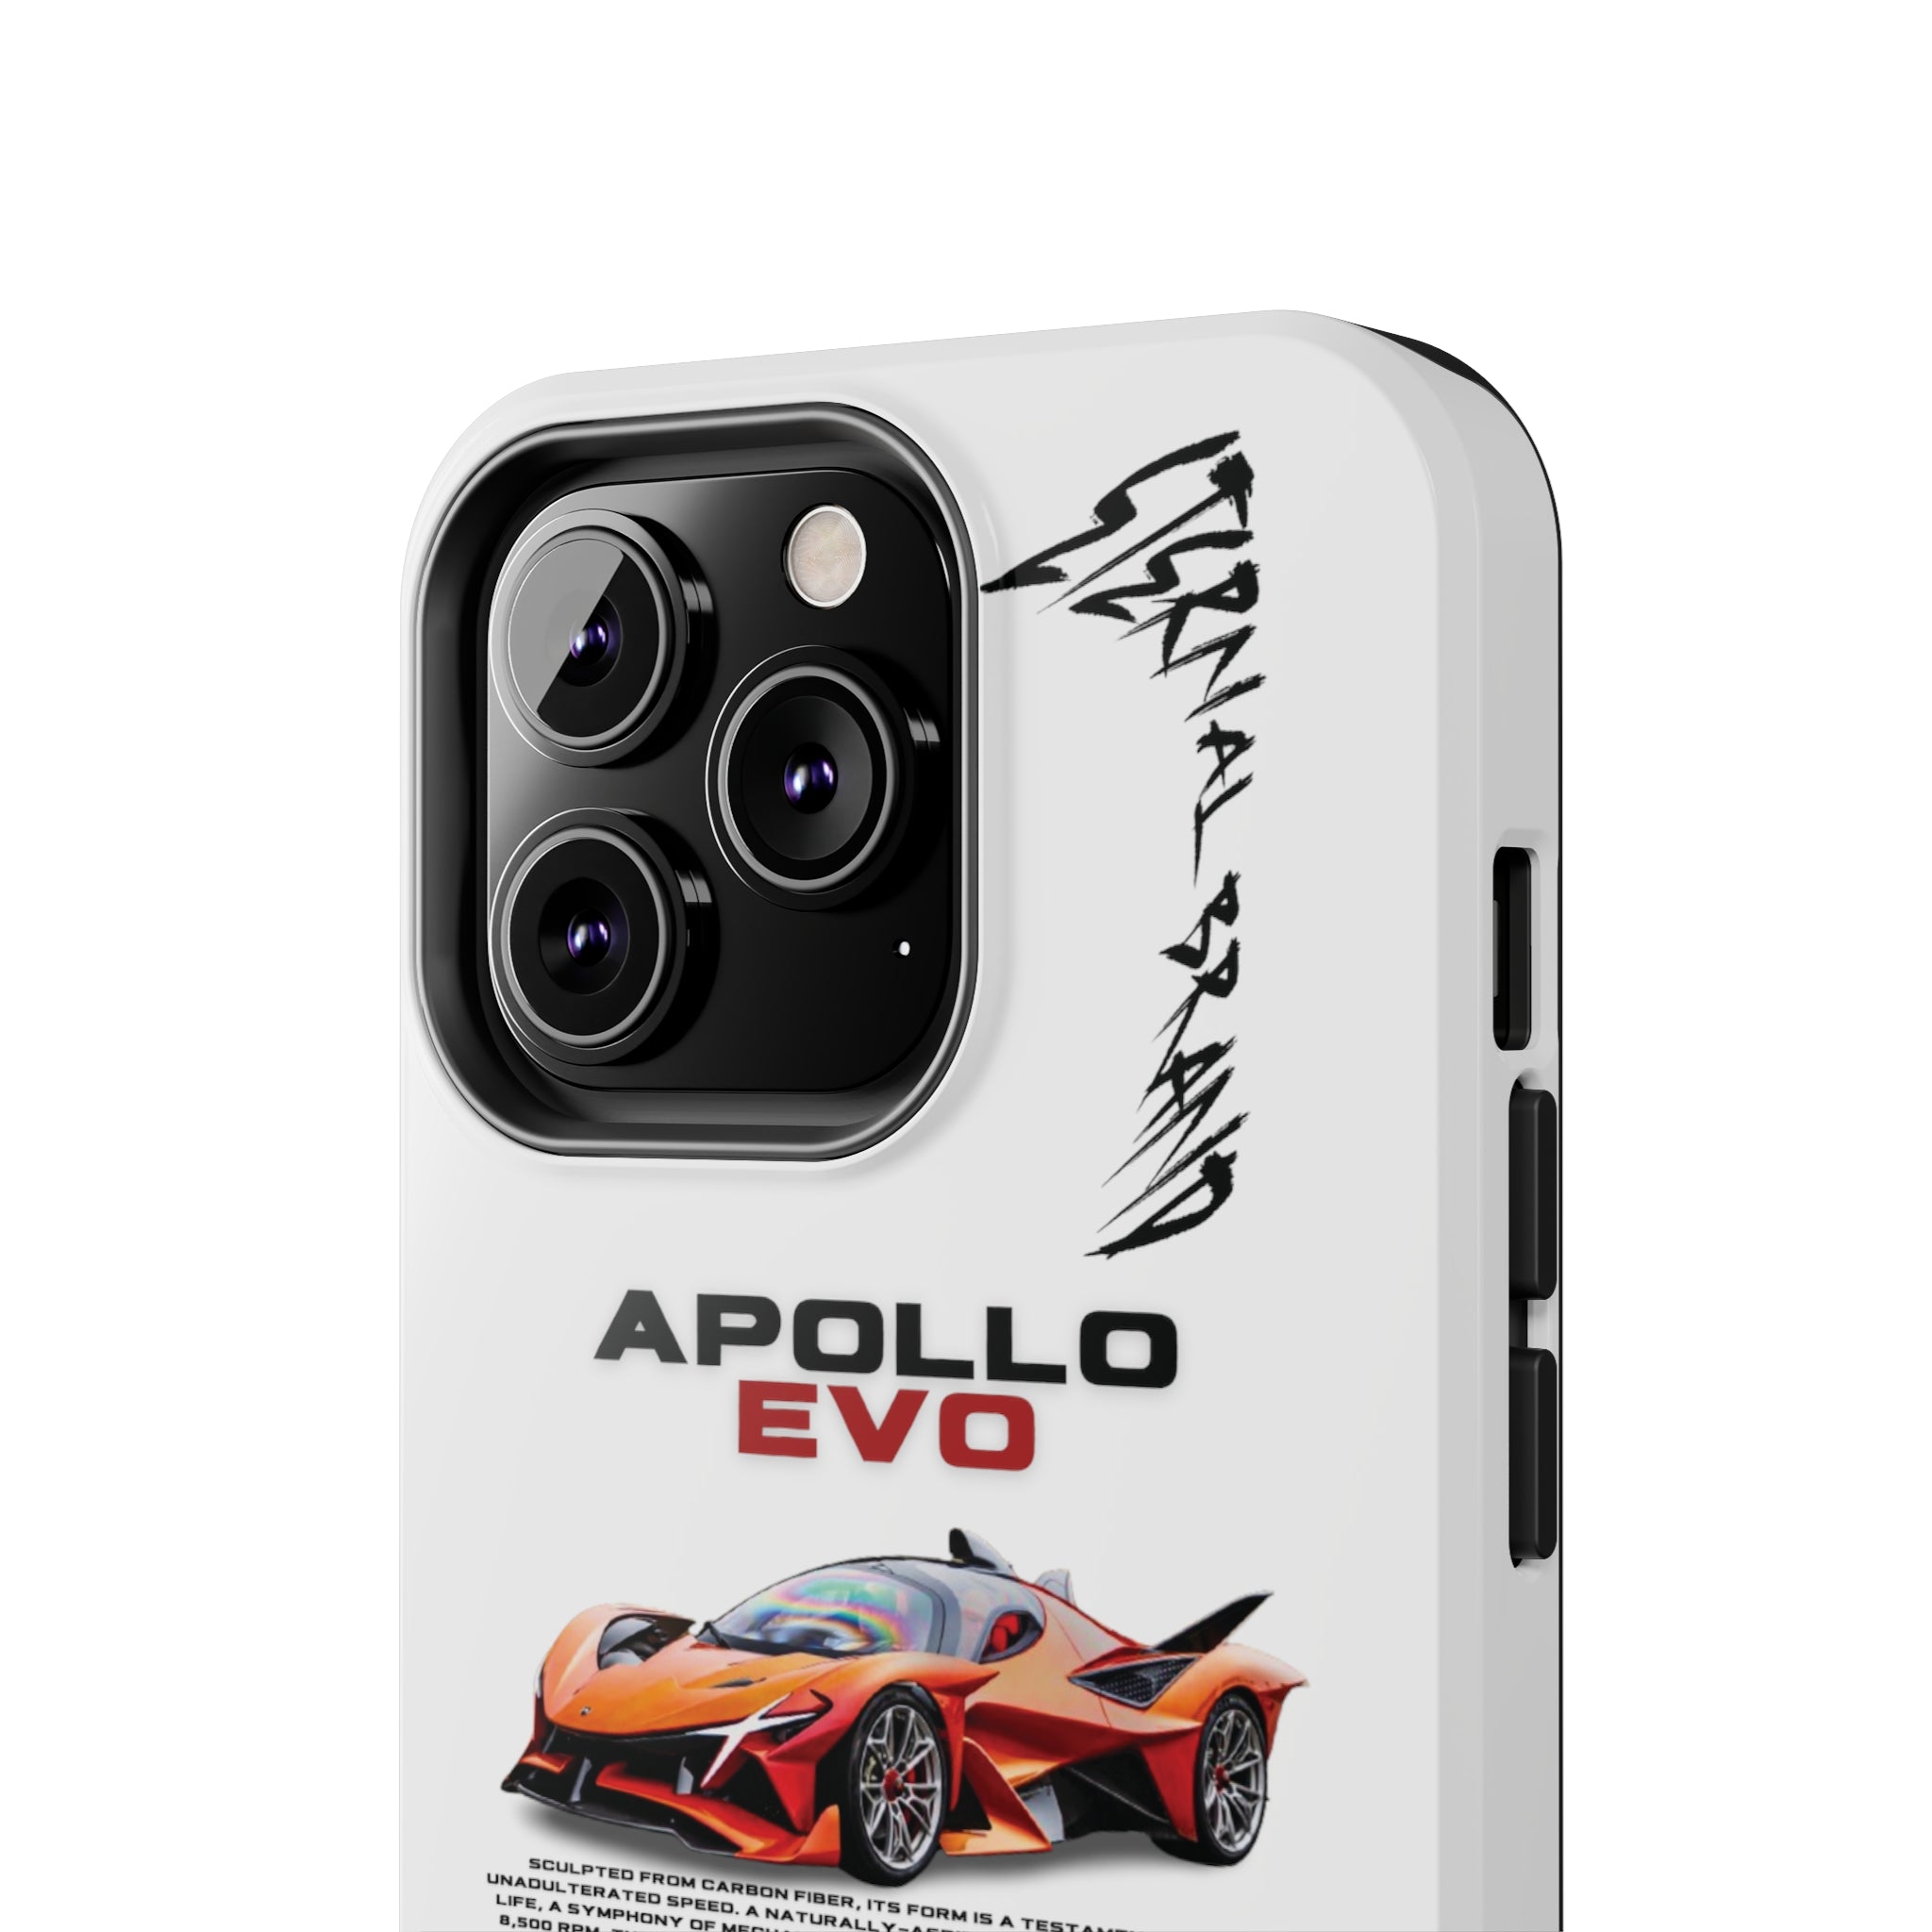 Apollo EVO "Deep Orange" "White"